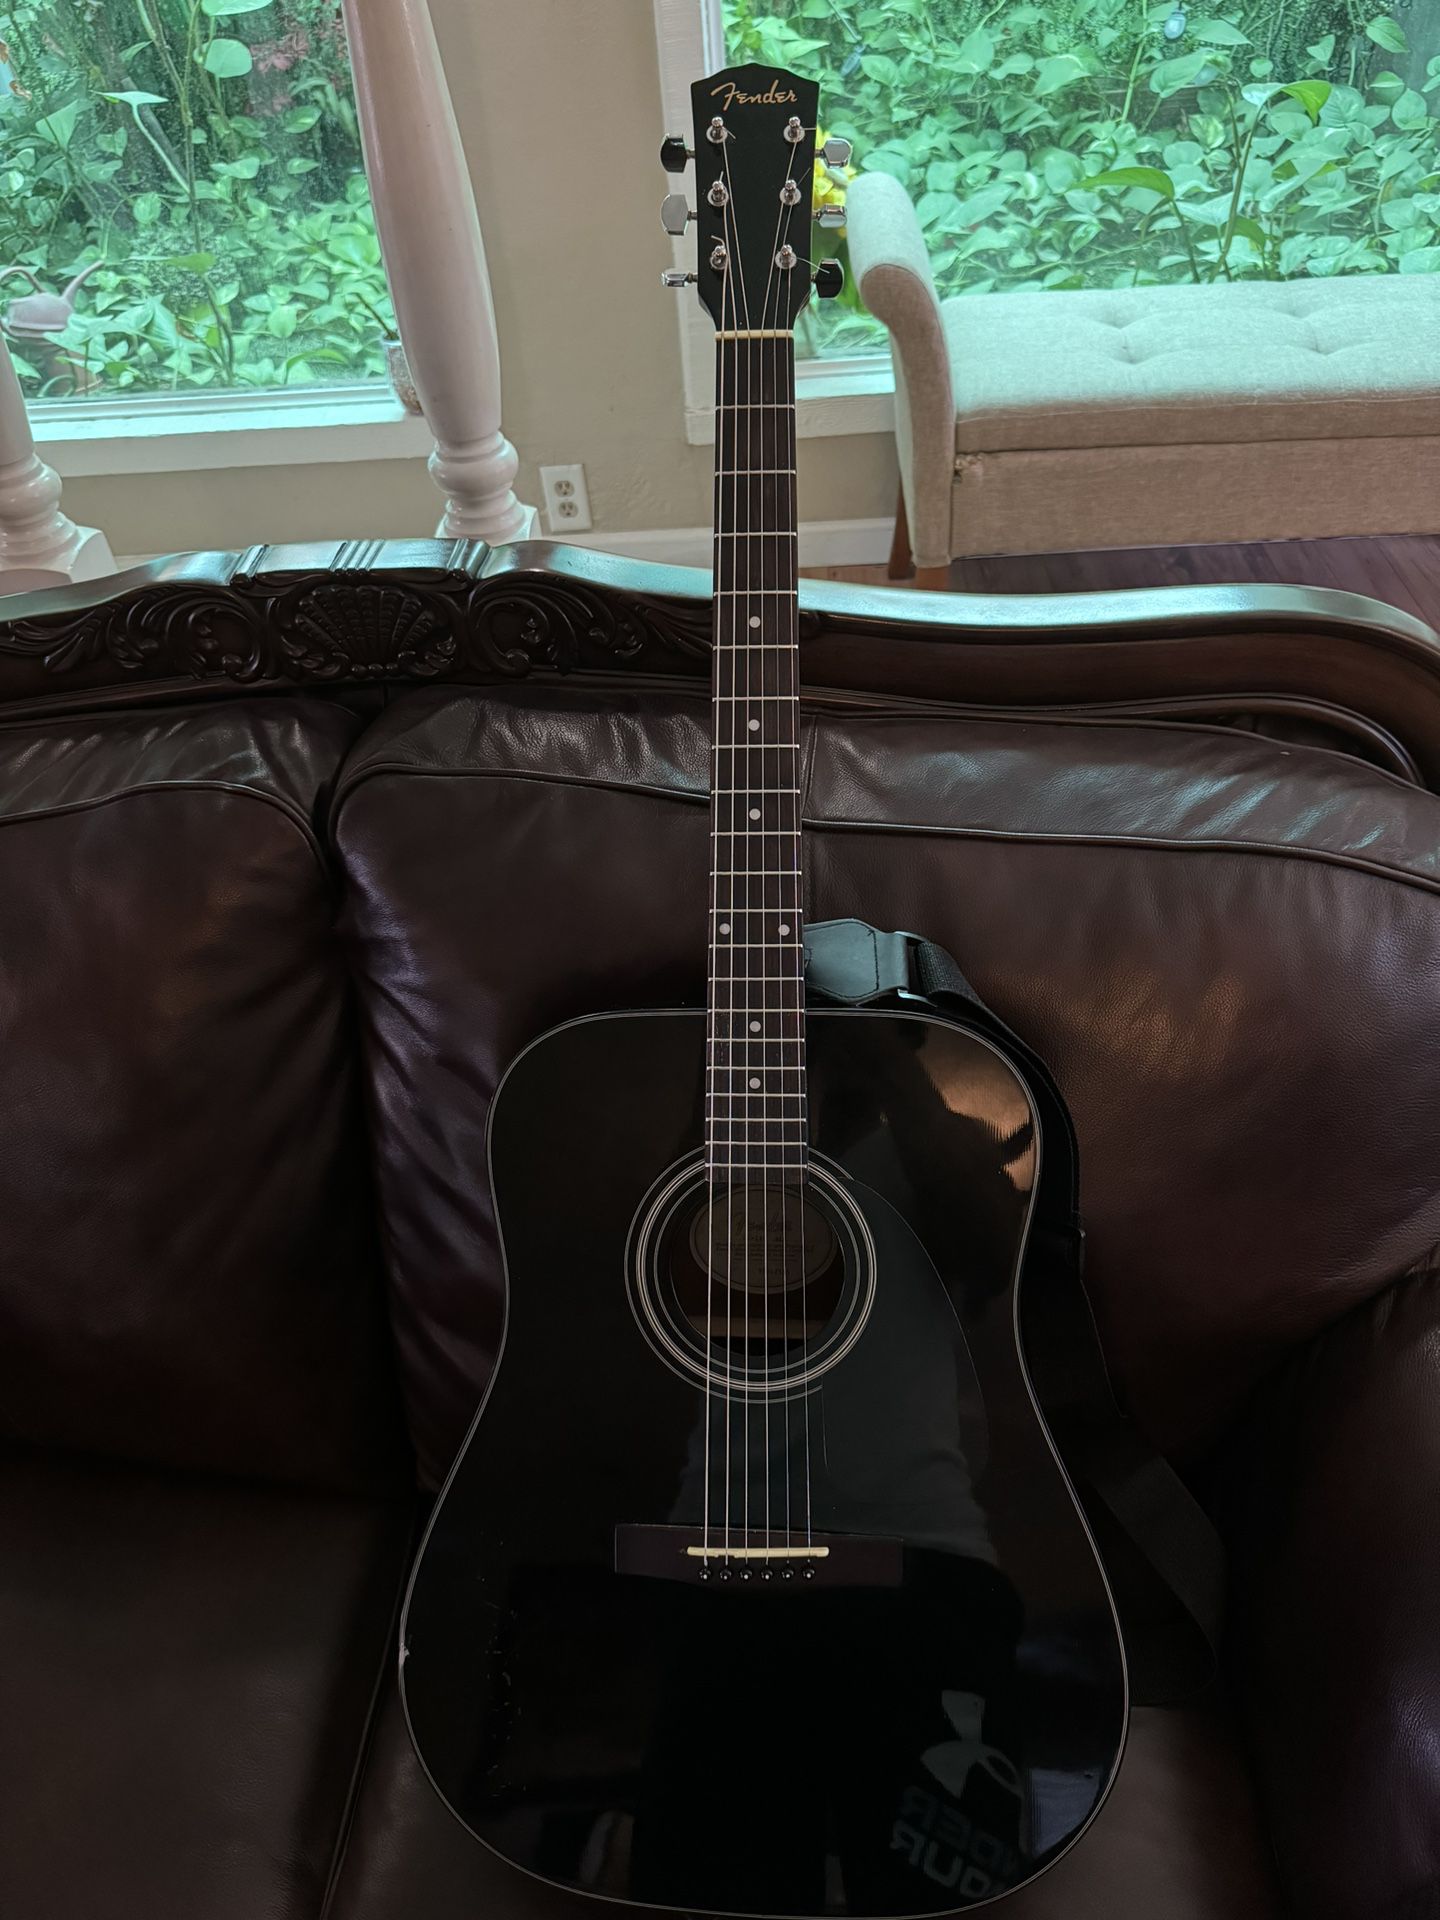 The Fender DG-11E acoustic-electric guitar